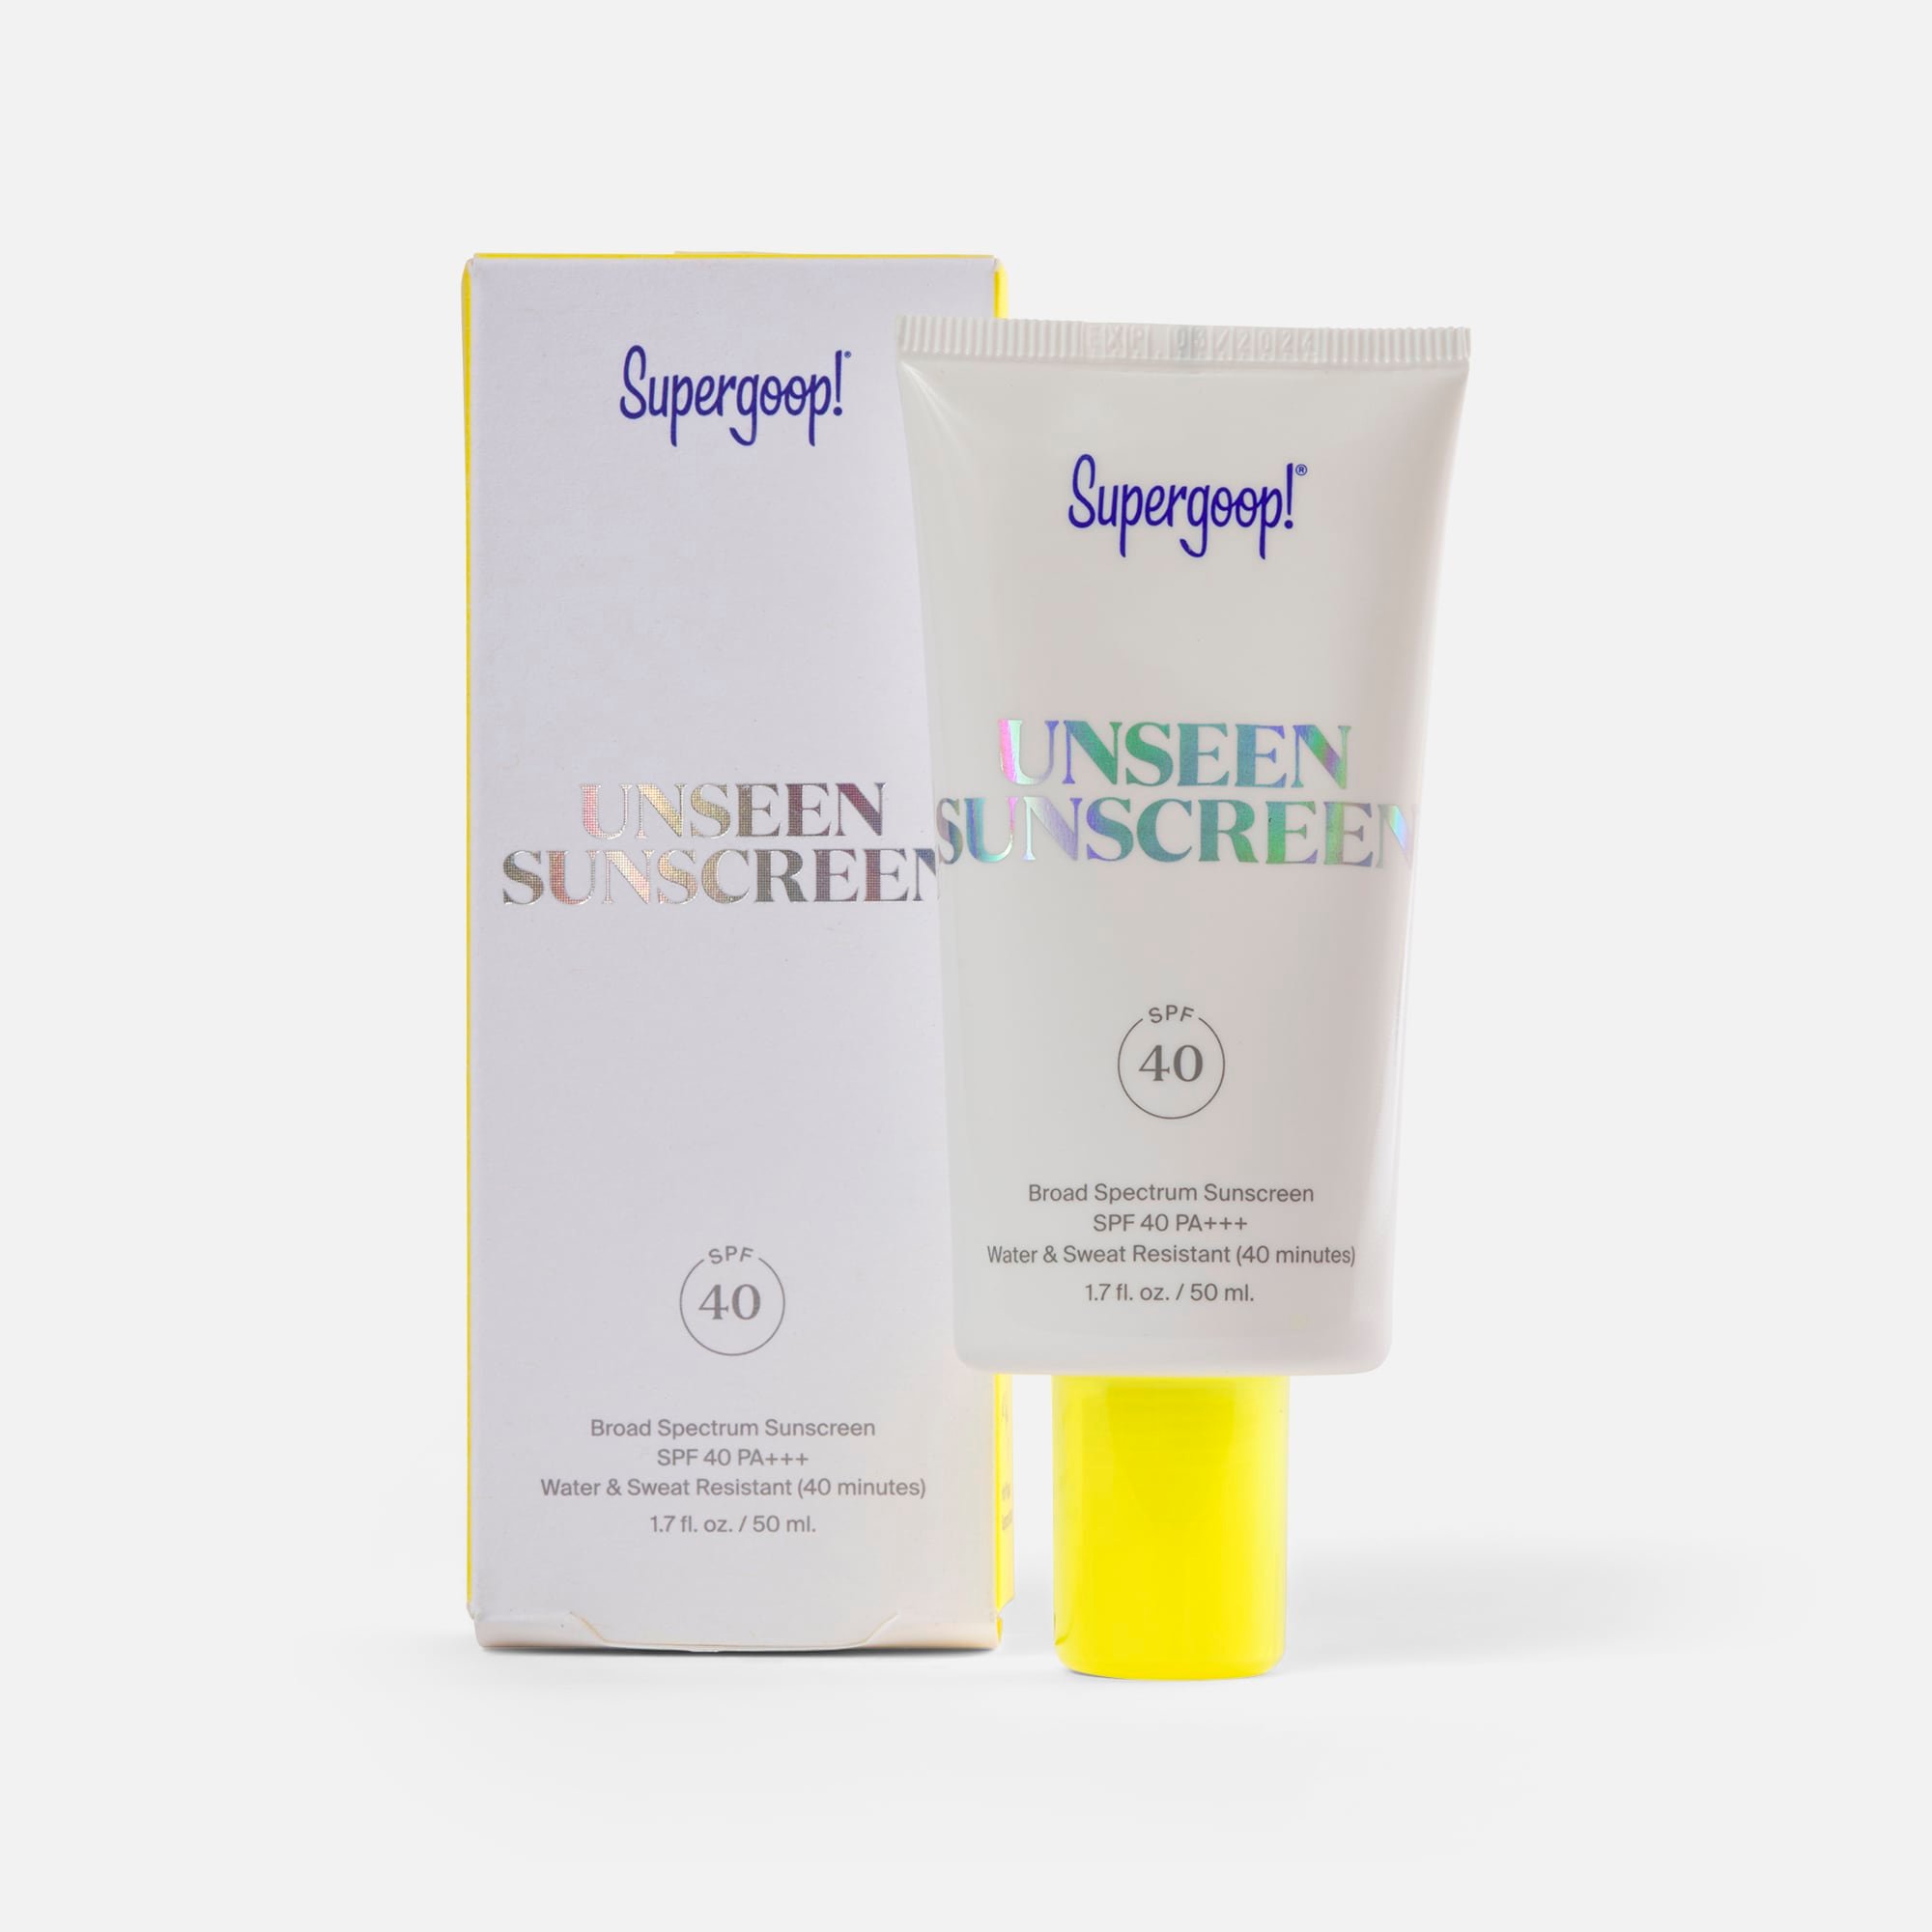 Supergoop! Unseen Sunscreen, SPF 40, 1.7 fl oz.